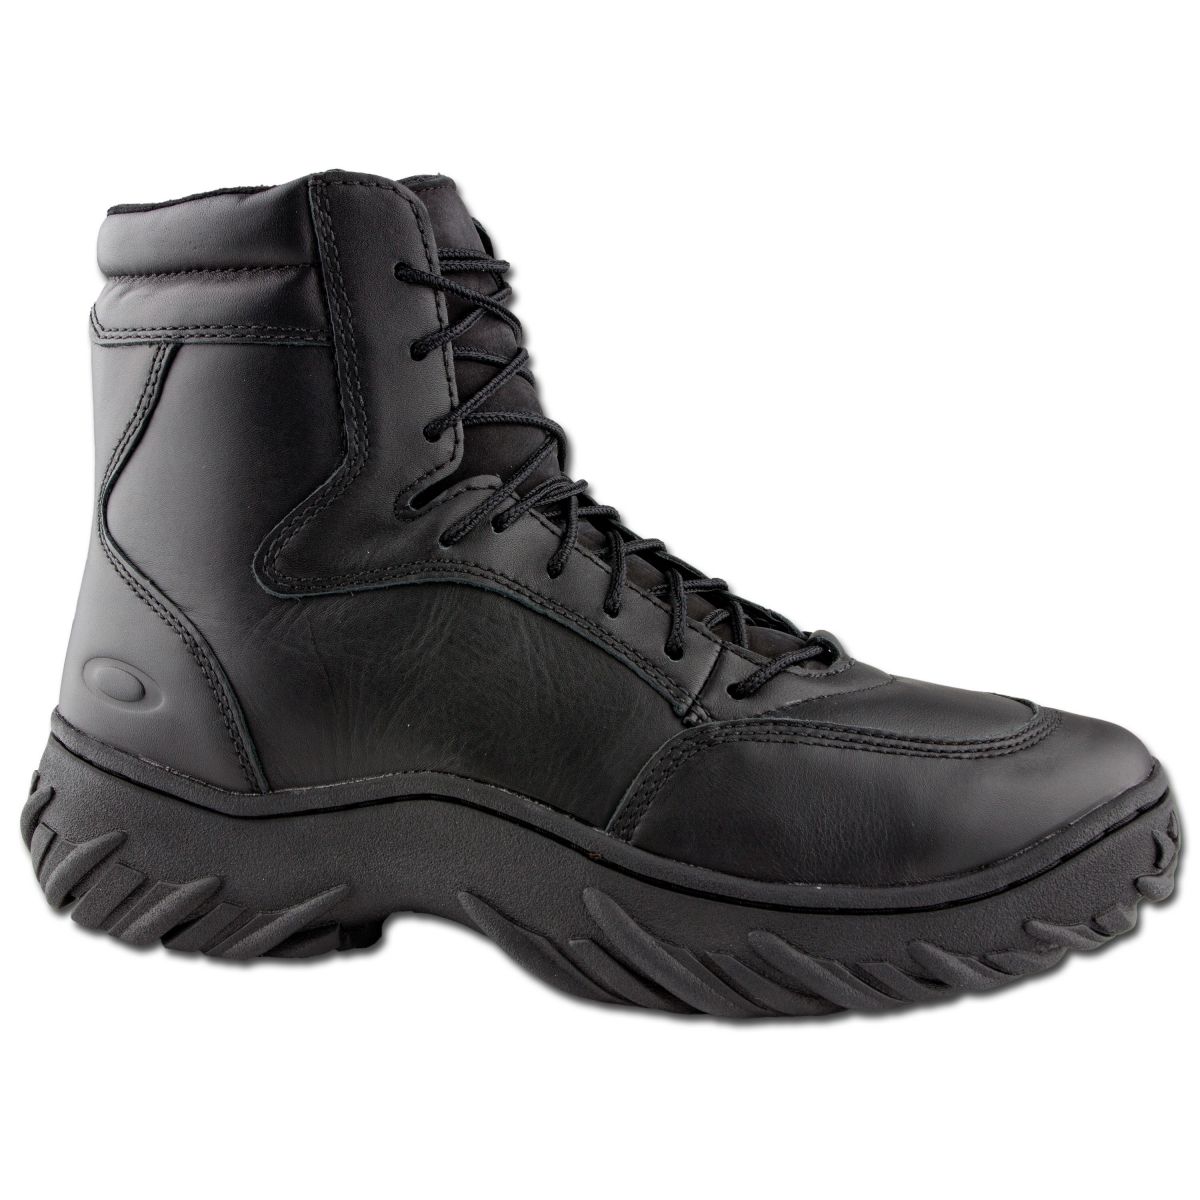 Boots Oakley S.I Assault | Boots Oakley S.I Assault | Combat Boots ...